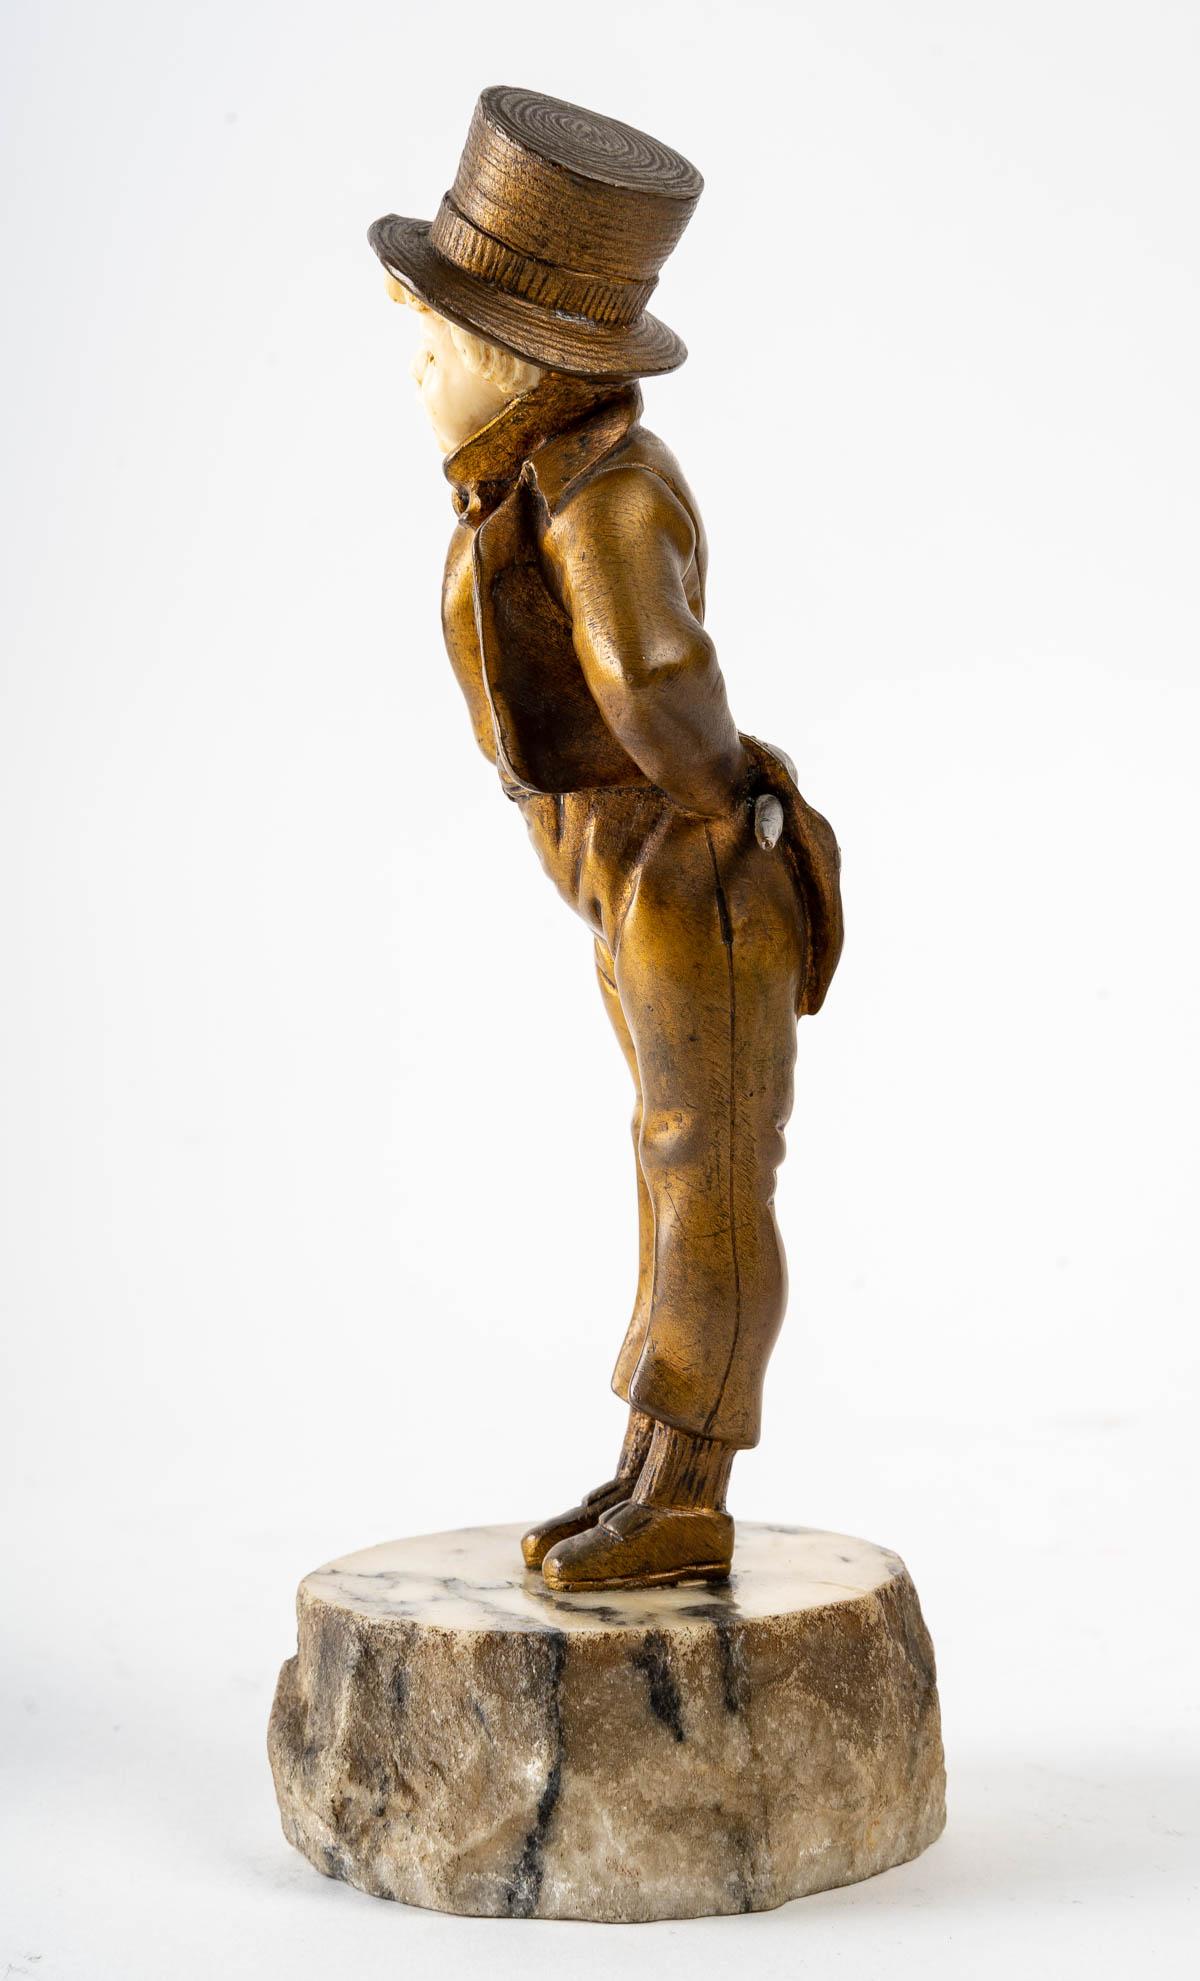 Petite sculpture de Georges Omerth (1895 - 1925)
Mesures : H : 20 cm, L : 7 cm, P : 7 cm.